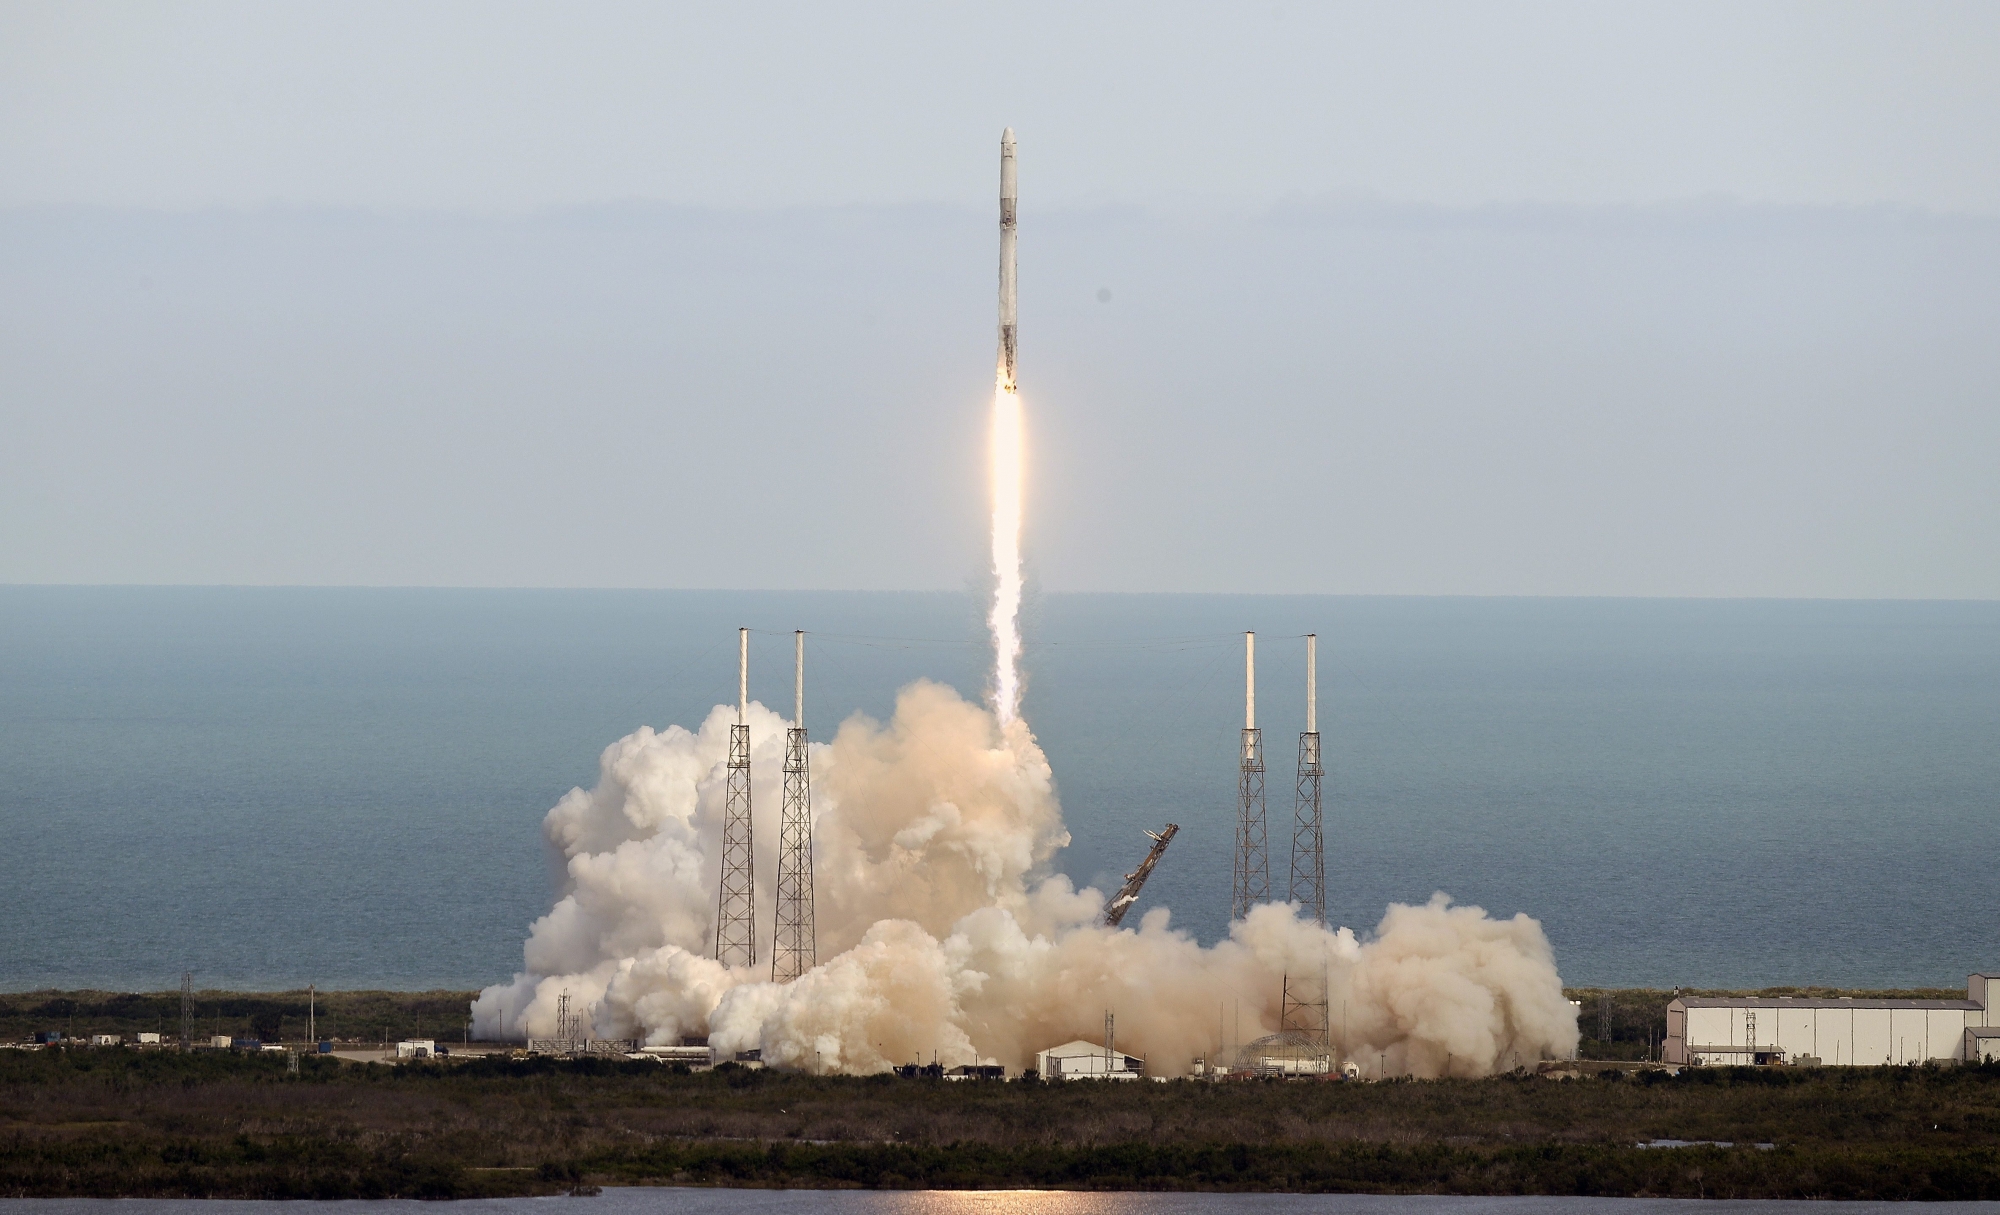 Décolage de Cap Canaveral en Floride, le 2 avril 2018, d'une Falcon 9 de Space-X pour la station spatiale internationale. A son bord, le satellite expérimental de la mission Remove Debris.